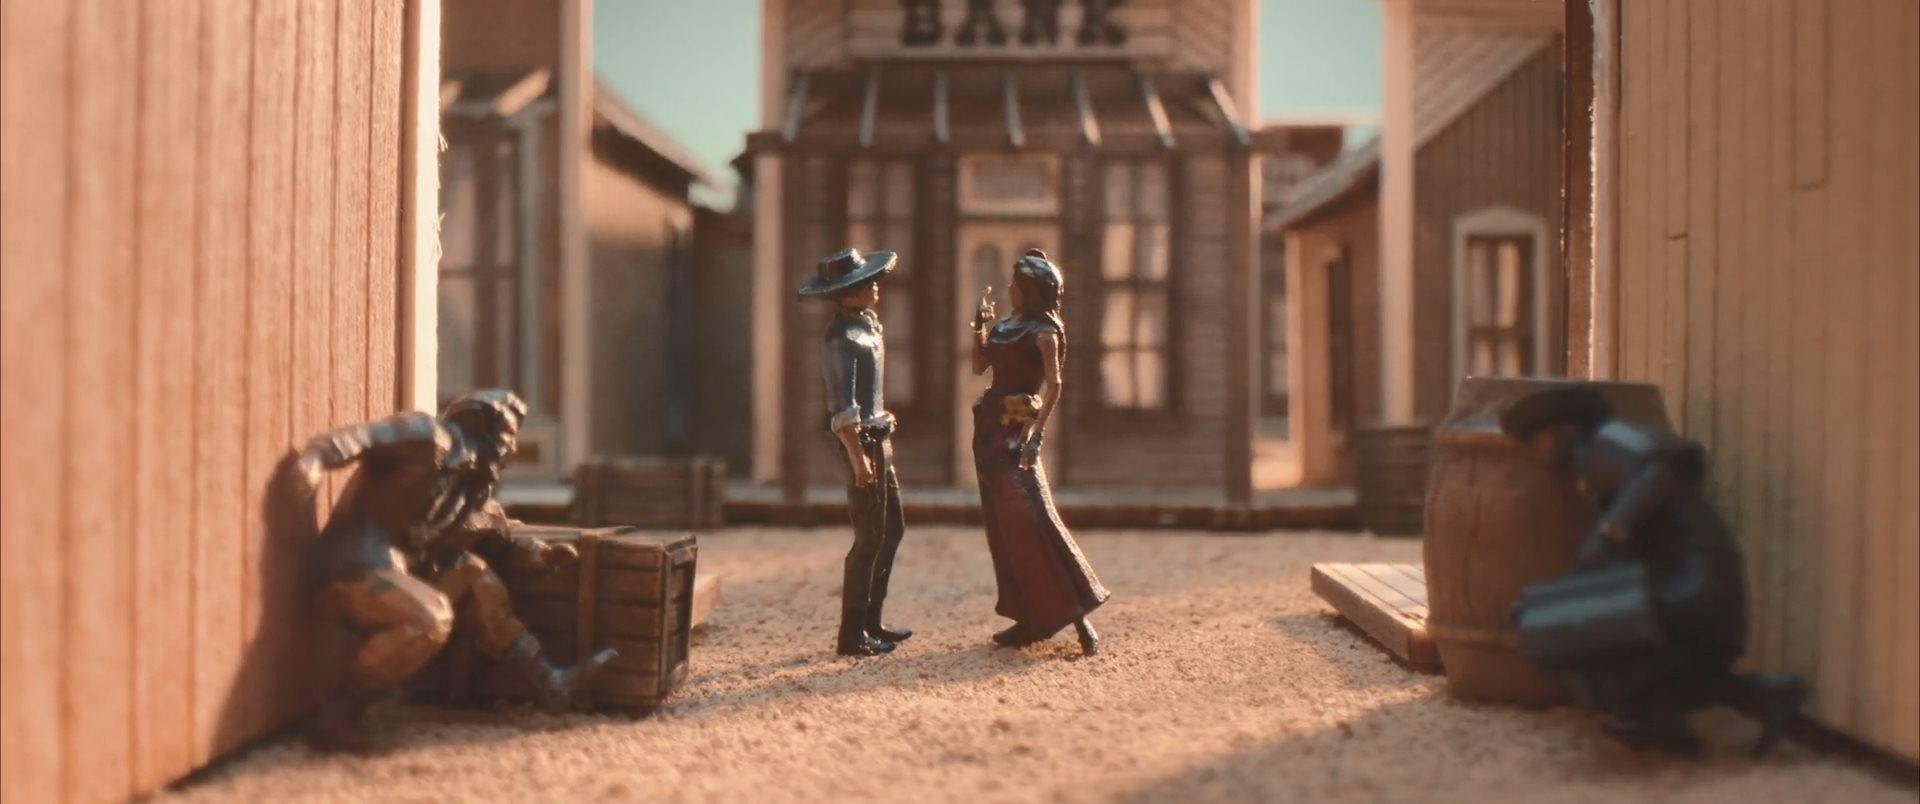 《赏金奇兵3》模型版宣传片 官方打造微缩游戏世界